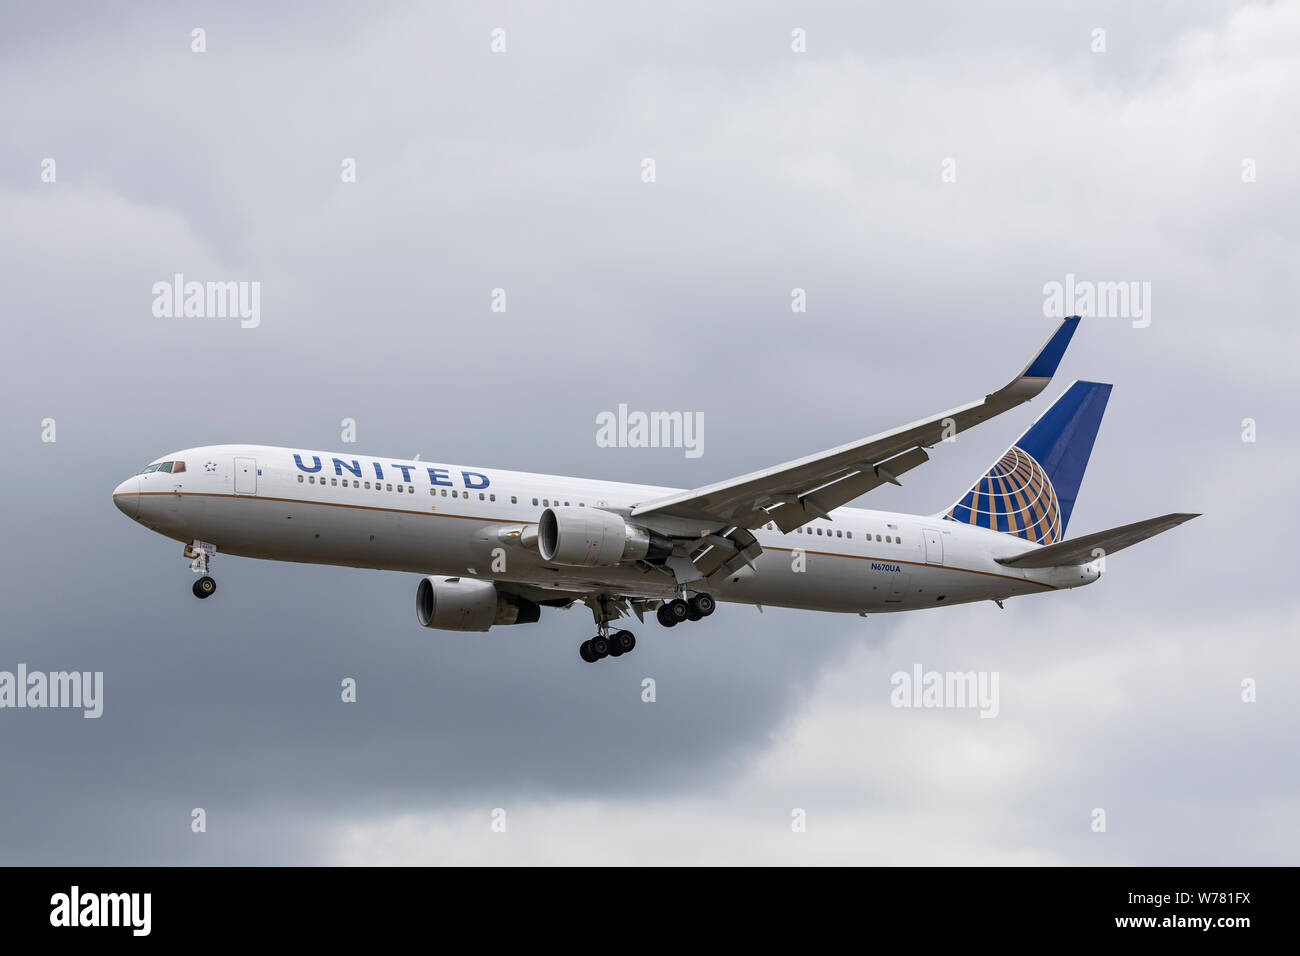 United Airlines Boeing 767, immatriculé N670UA, à l'atterrissage le 2 août 2019 à l'aéroport d'Heathrow, Middlesex, Royaume-Uni Banque D'Images